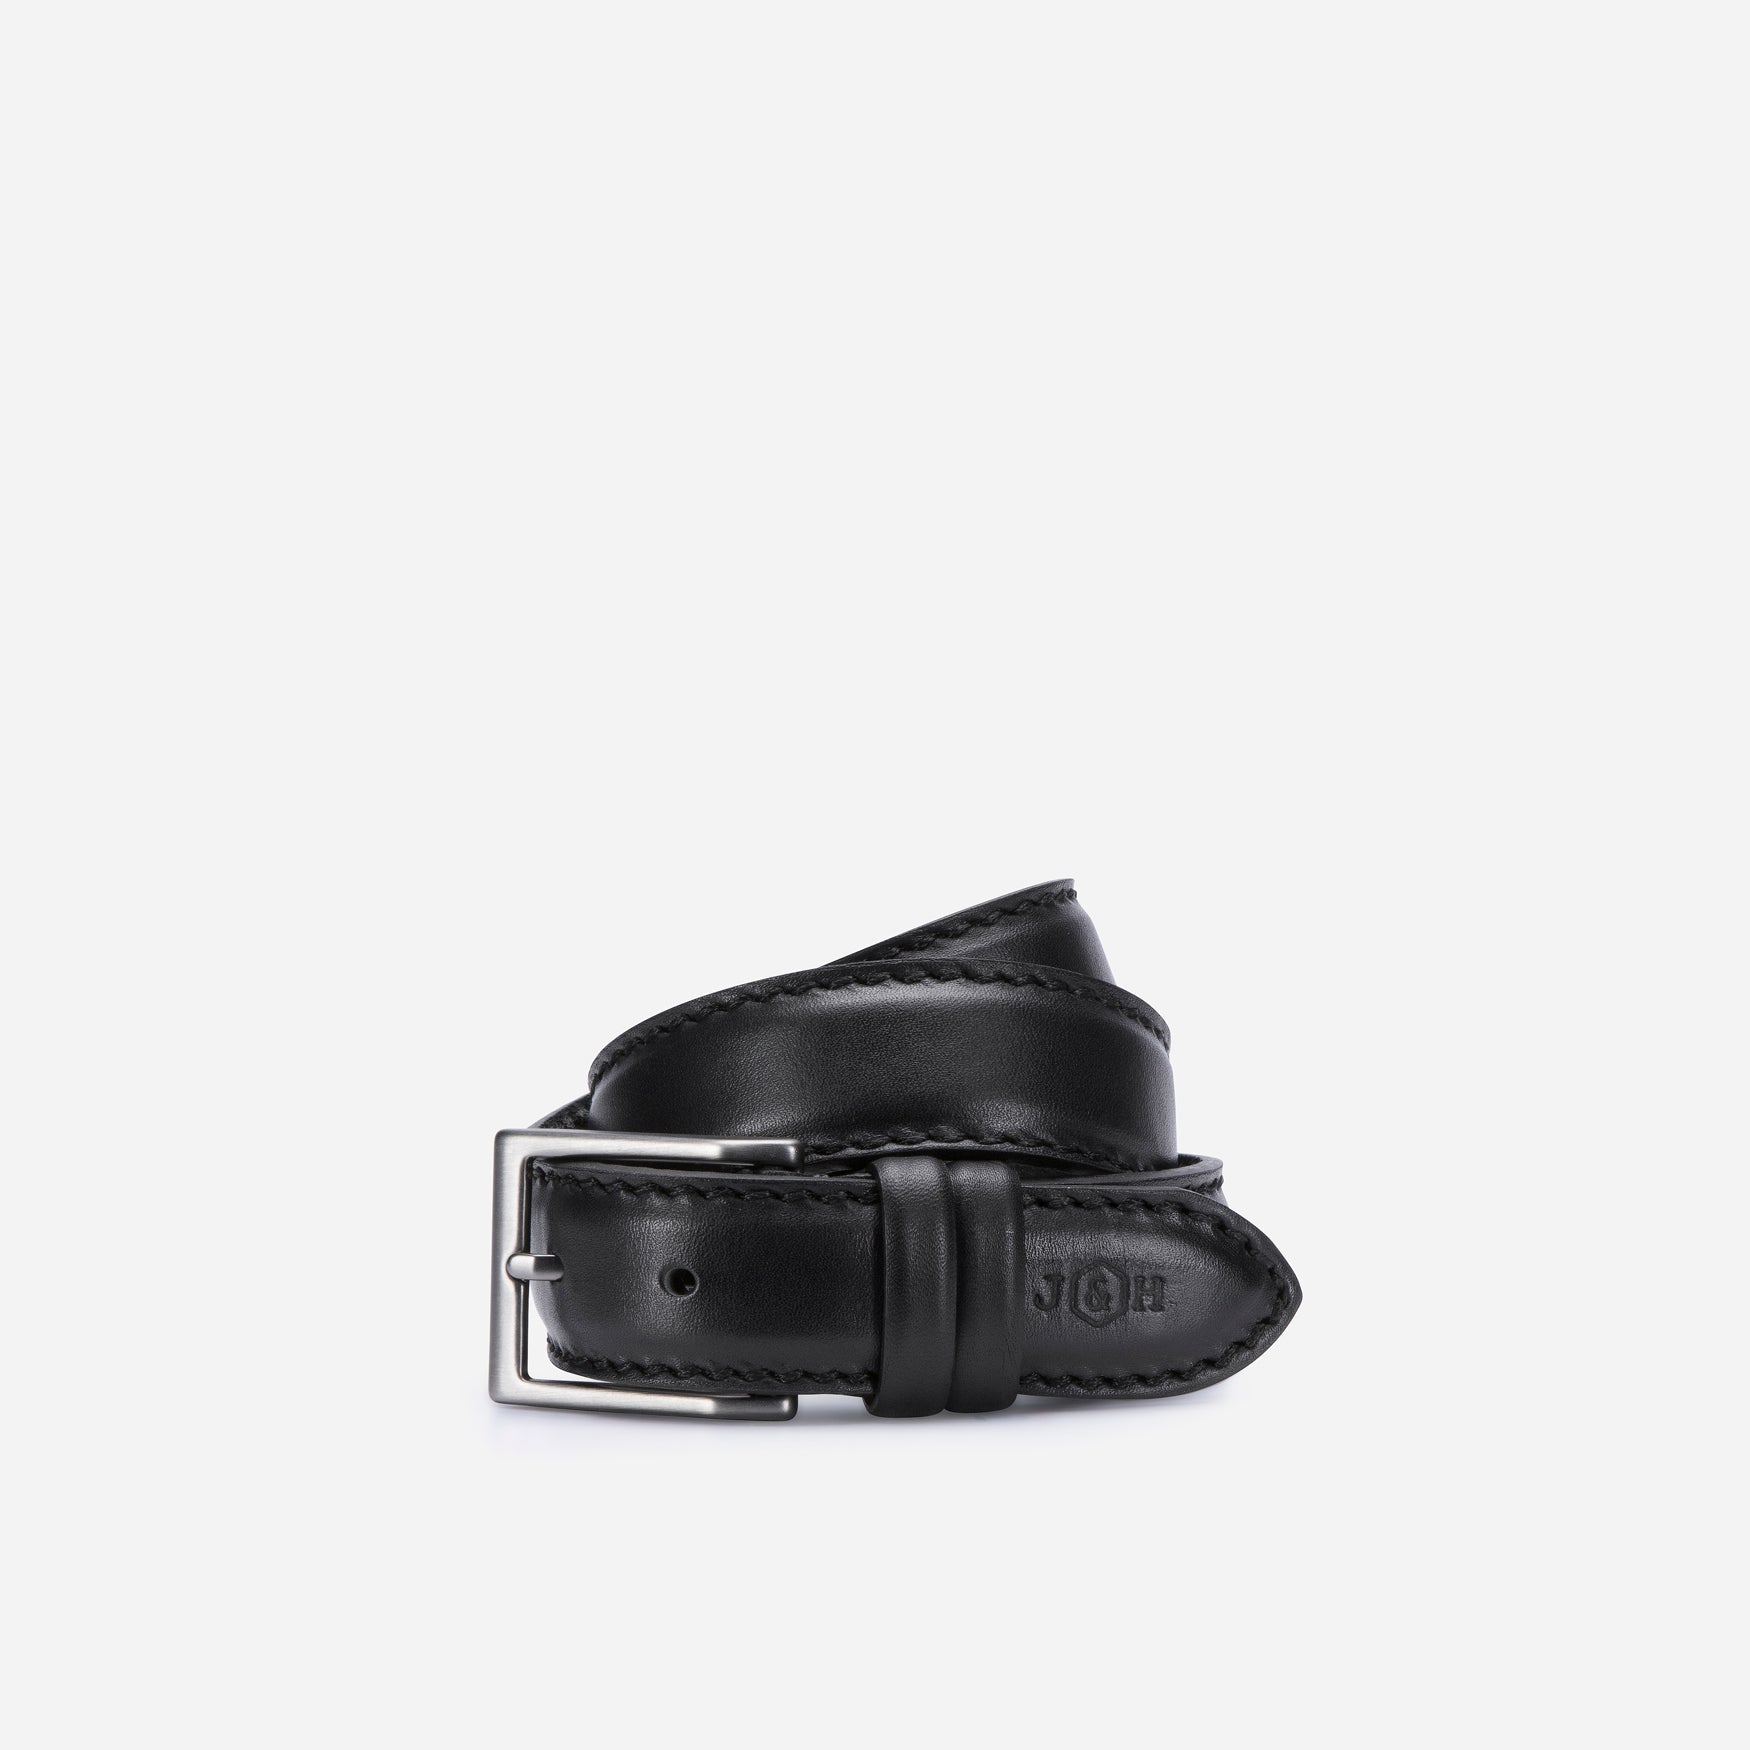 Smart Leather Belt, Black